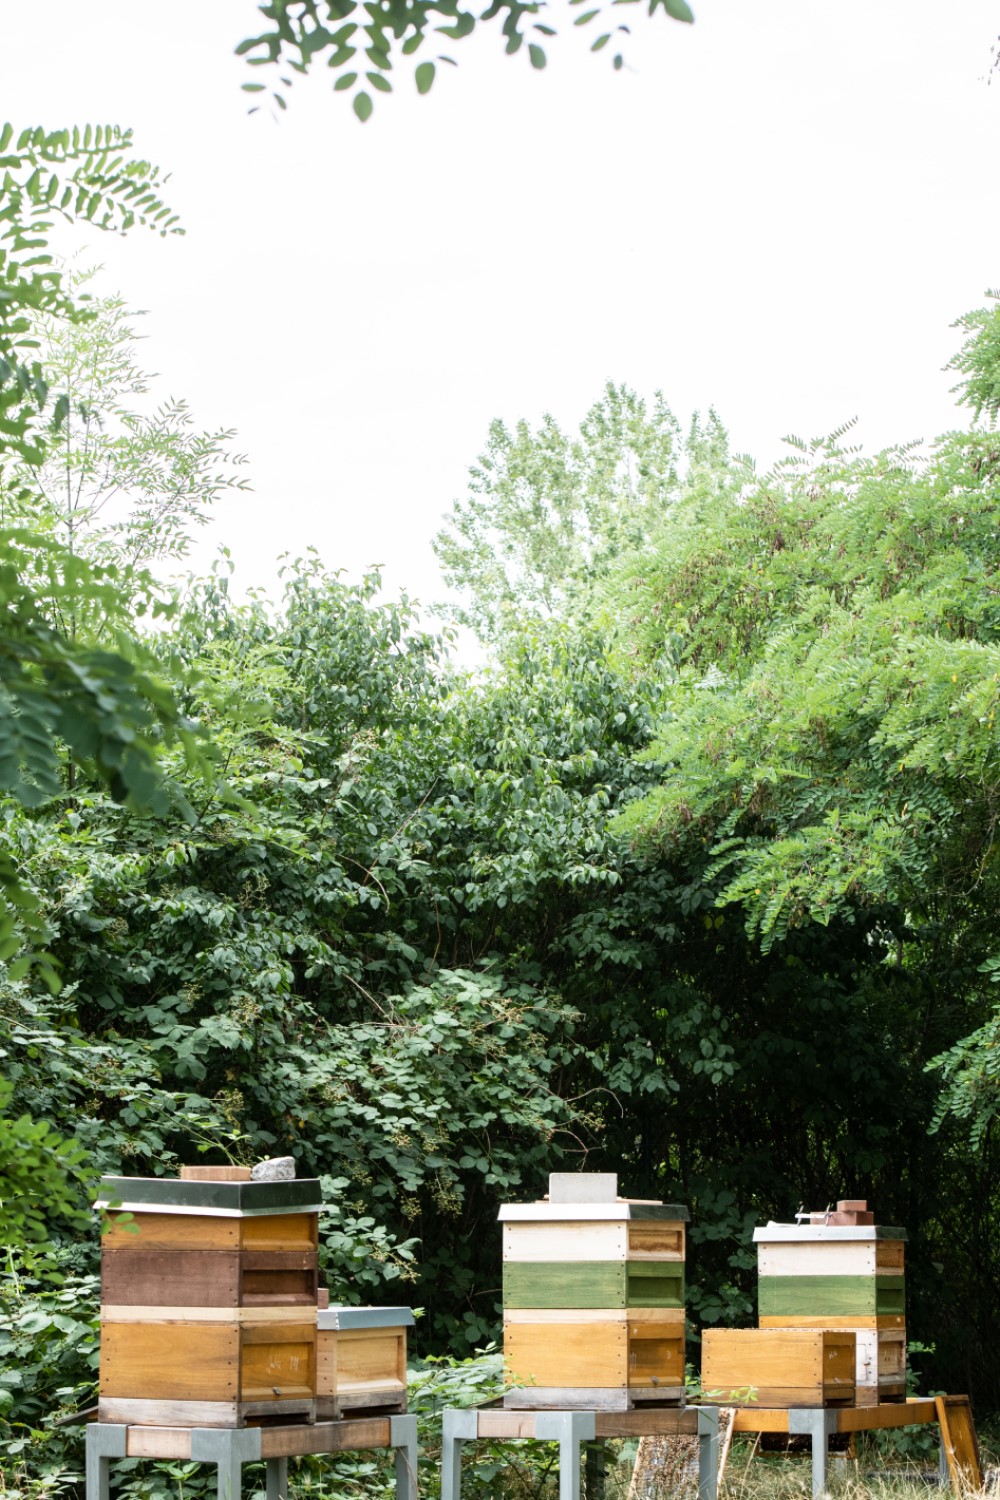 Bienenstöcke auf einer Wiese umringt von Bäumen